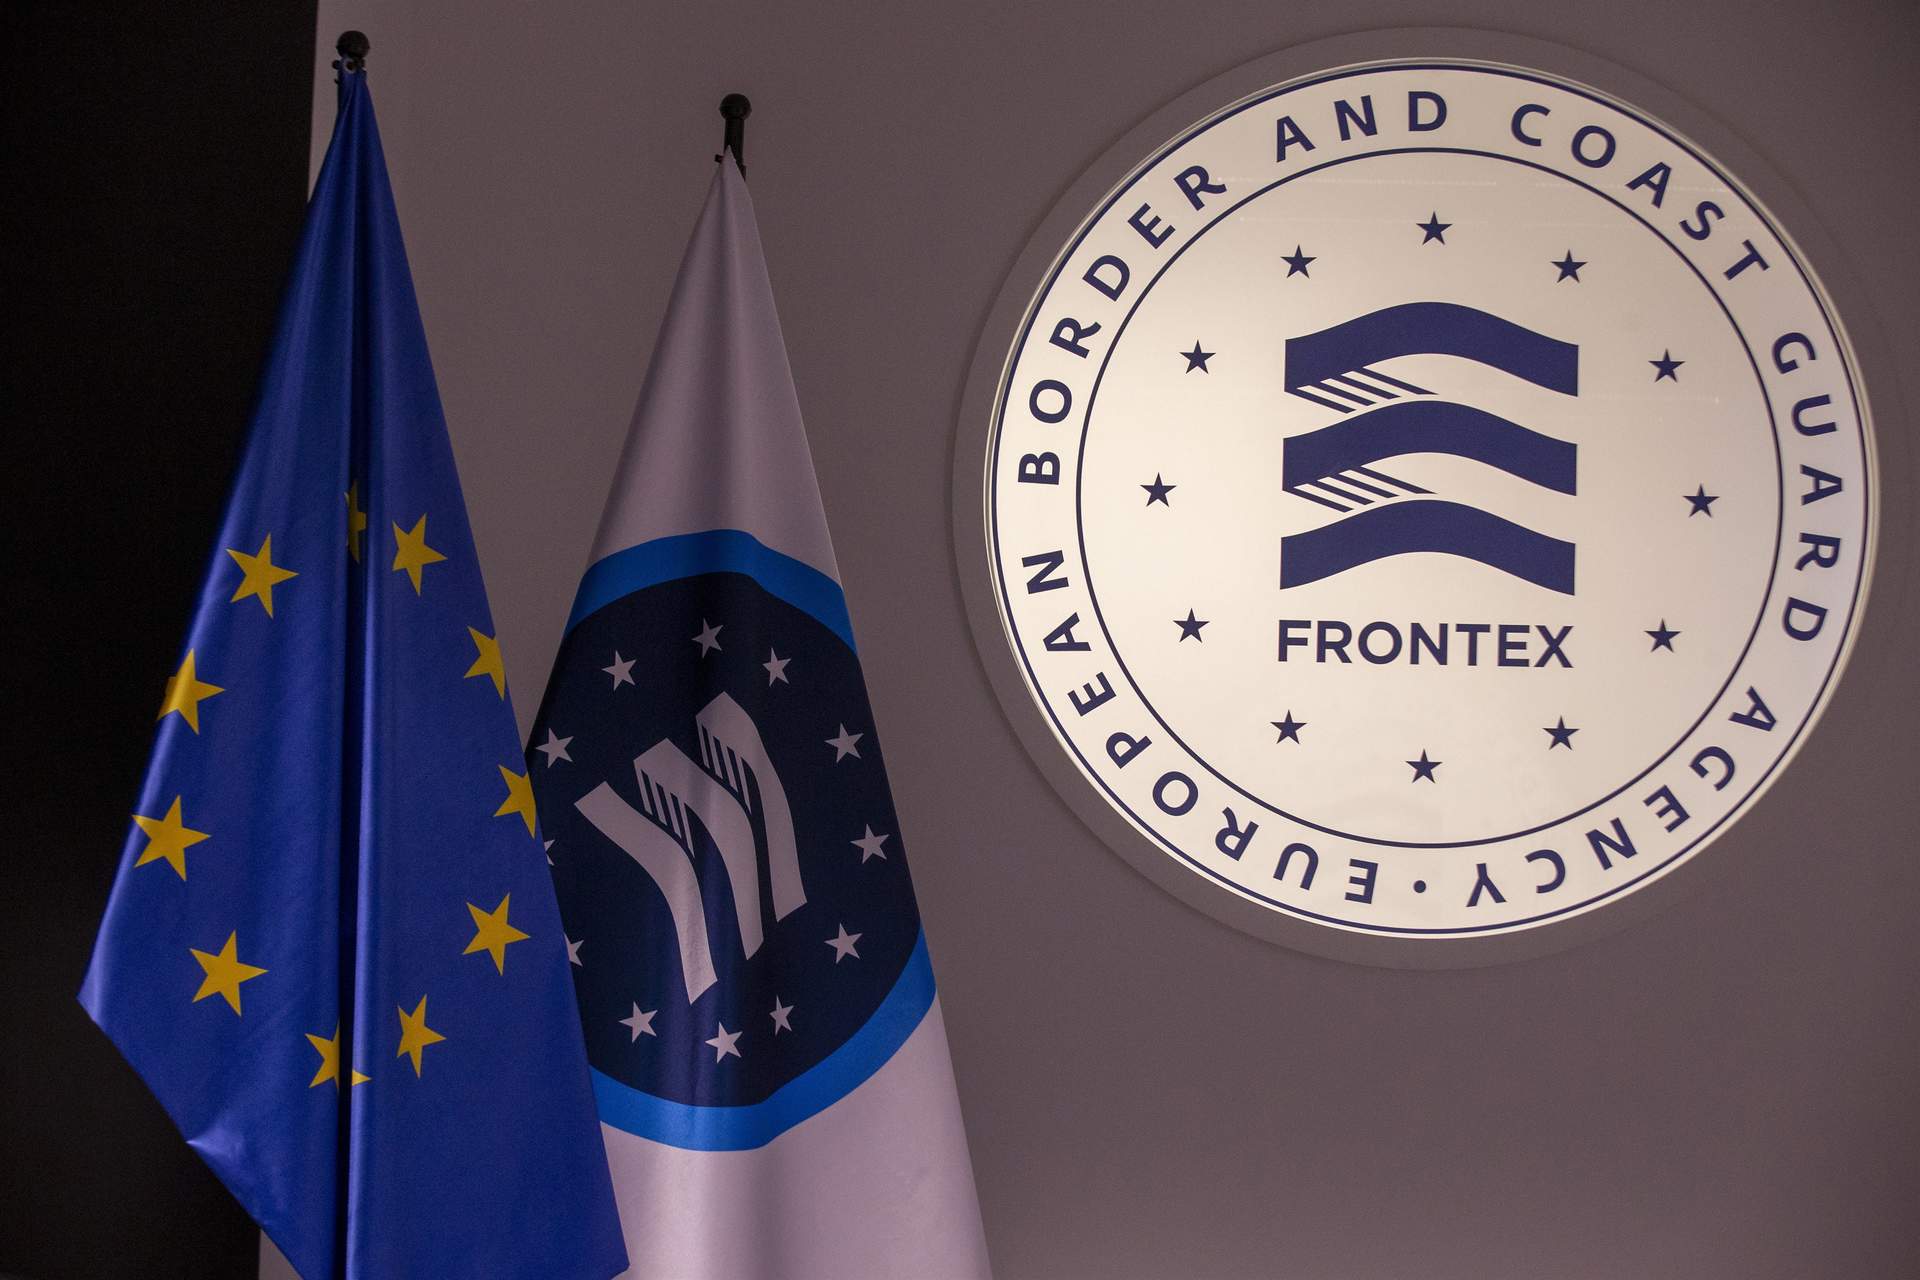 UP pregunta al Ejecutivo si ha pedido explicaciones a Frontex por presuntas irregularidades y devoluciones en caliente